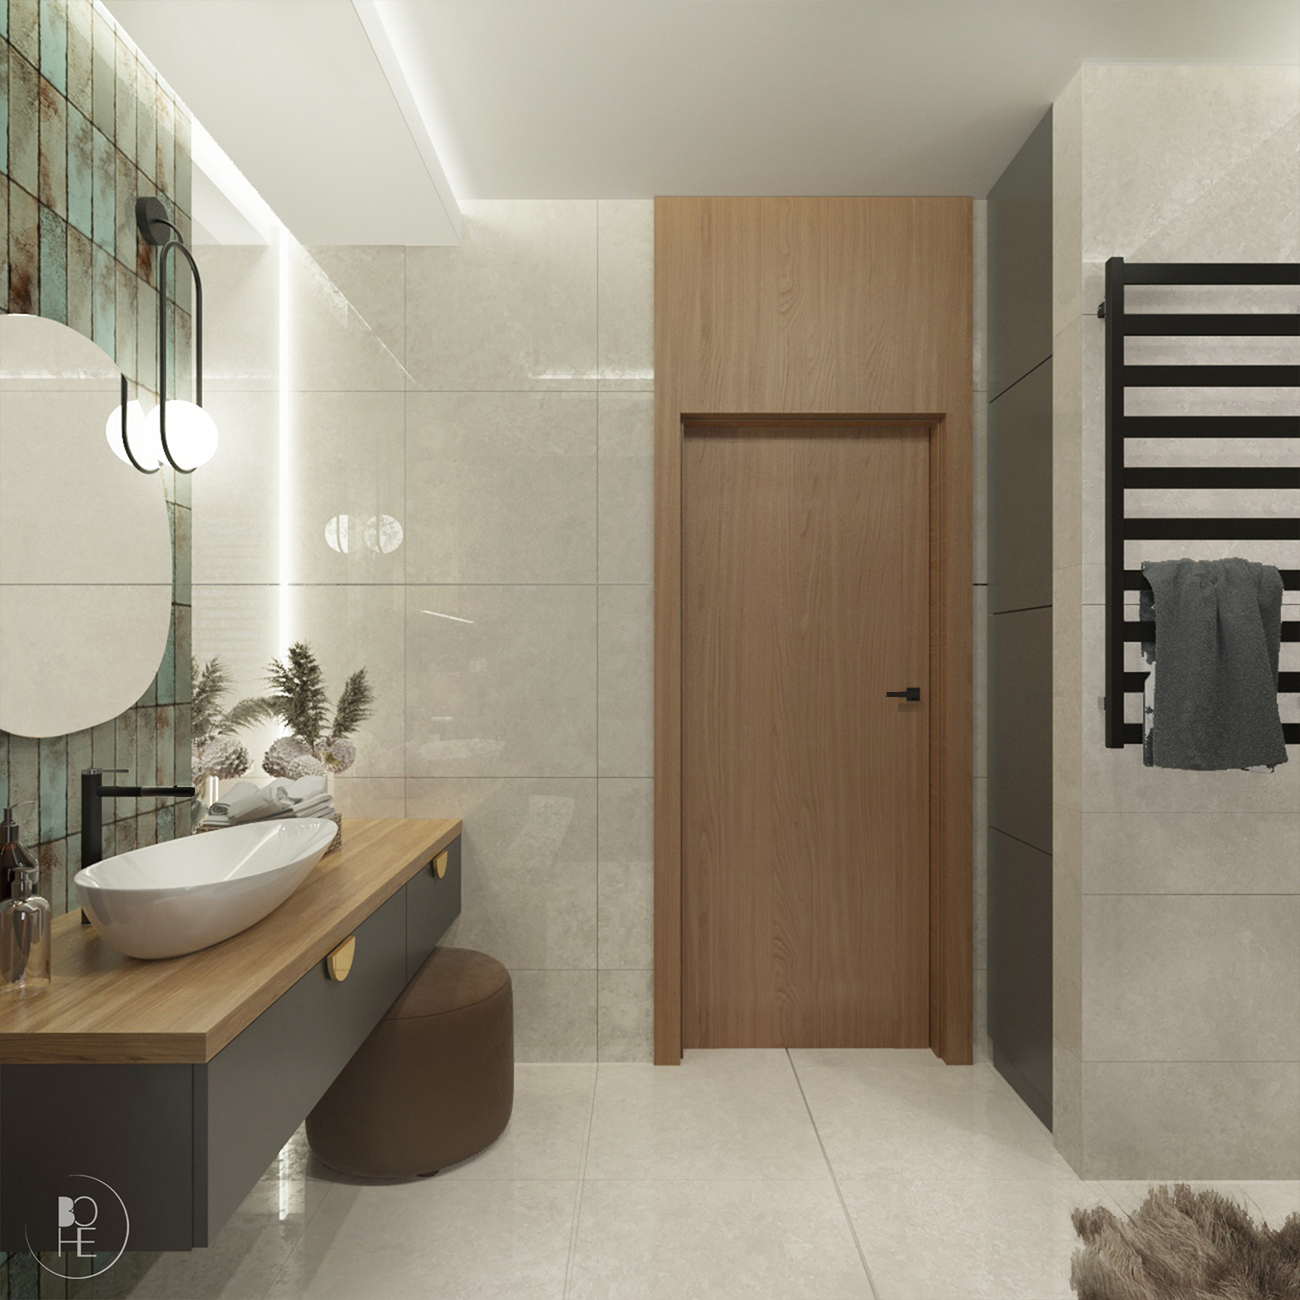 nowoczesna łazienka domowa strefa relaksu w ziemistych kolorach warszawa kraków wrocław architekt wnętrz białystok